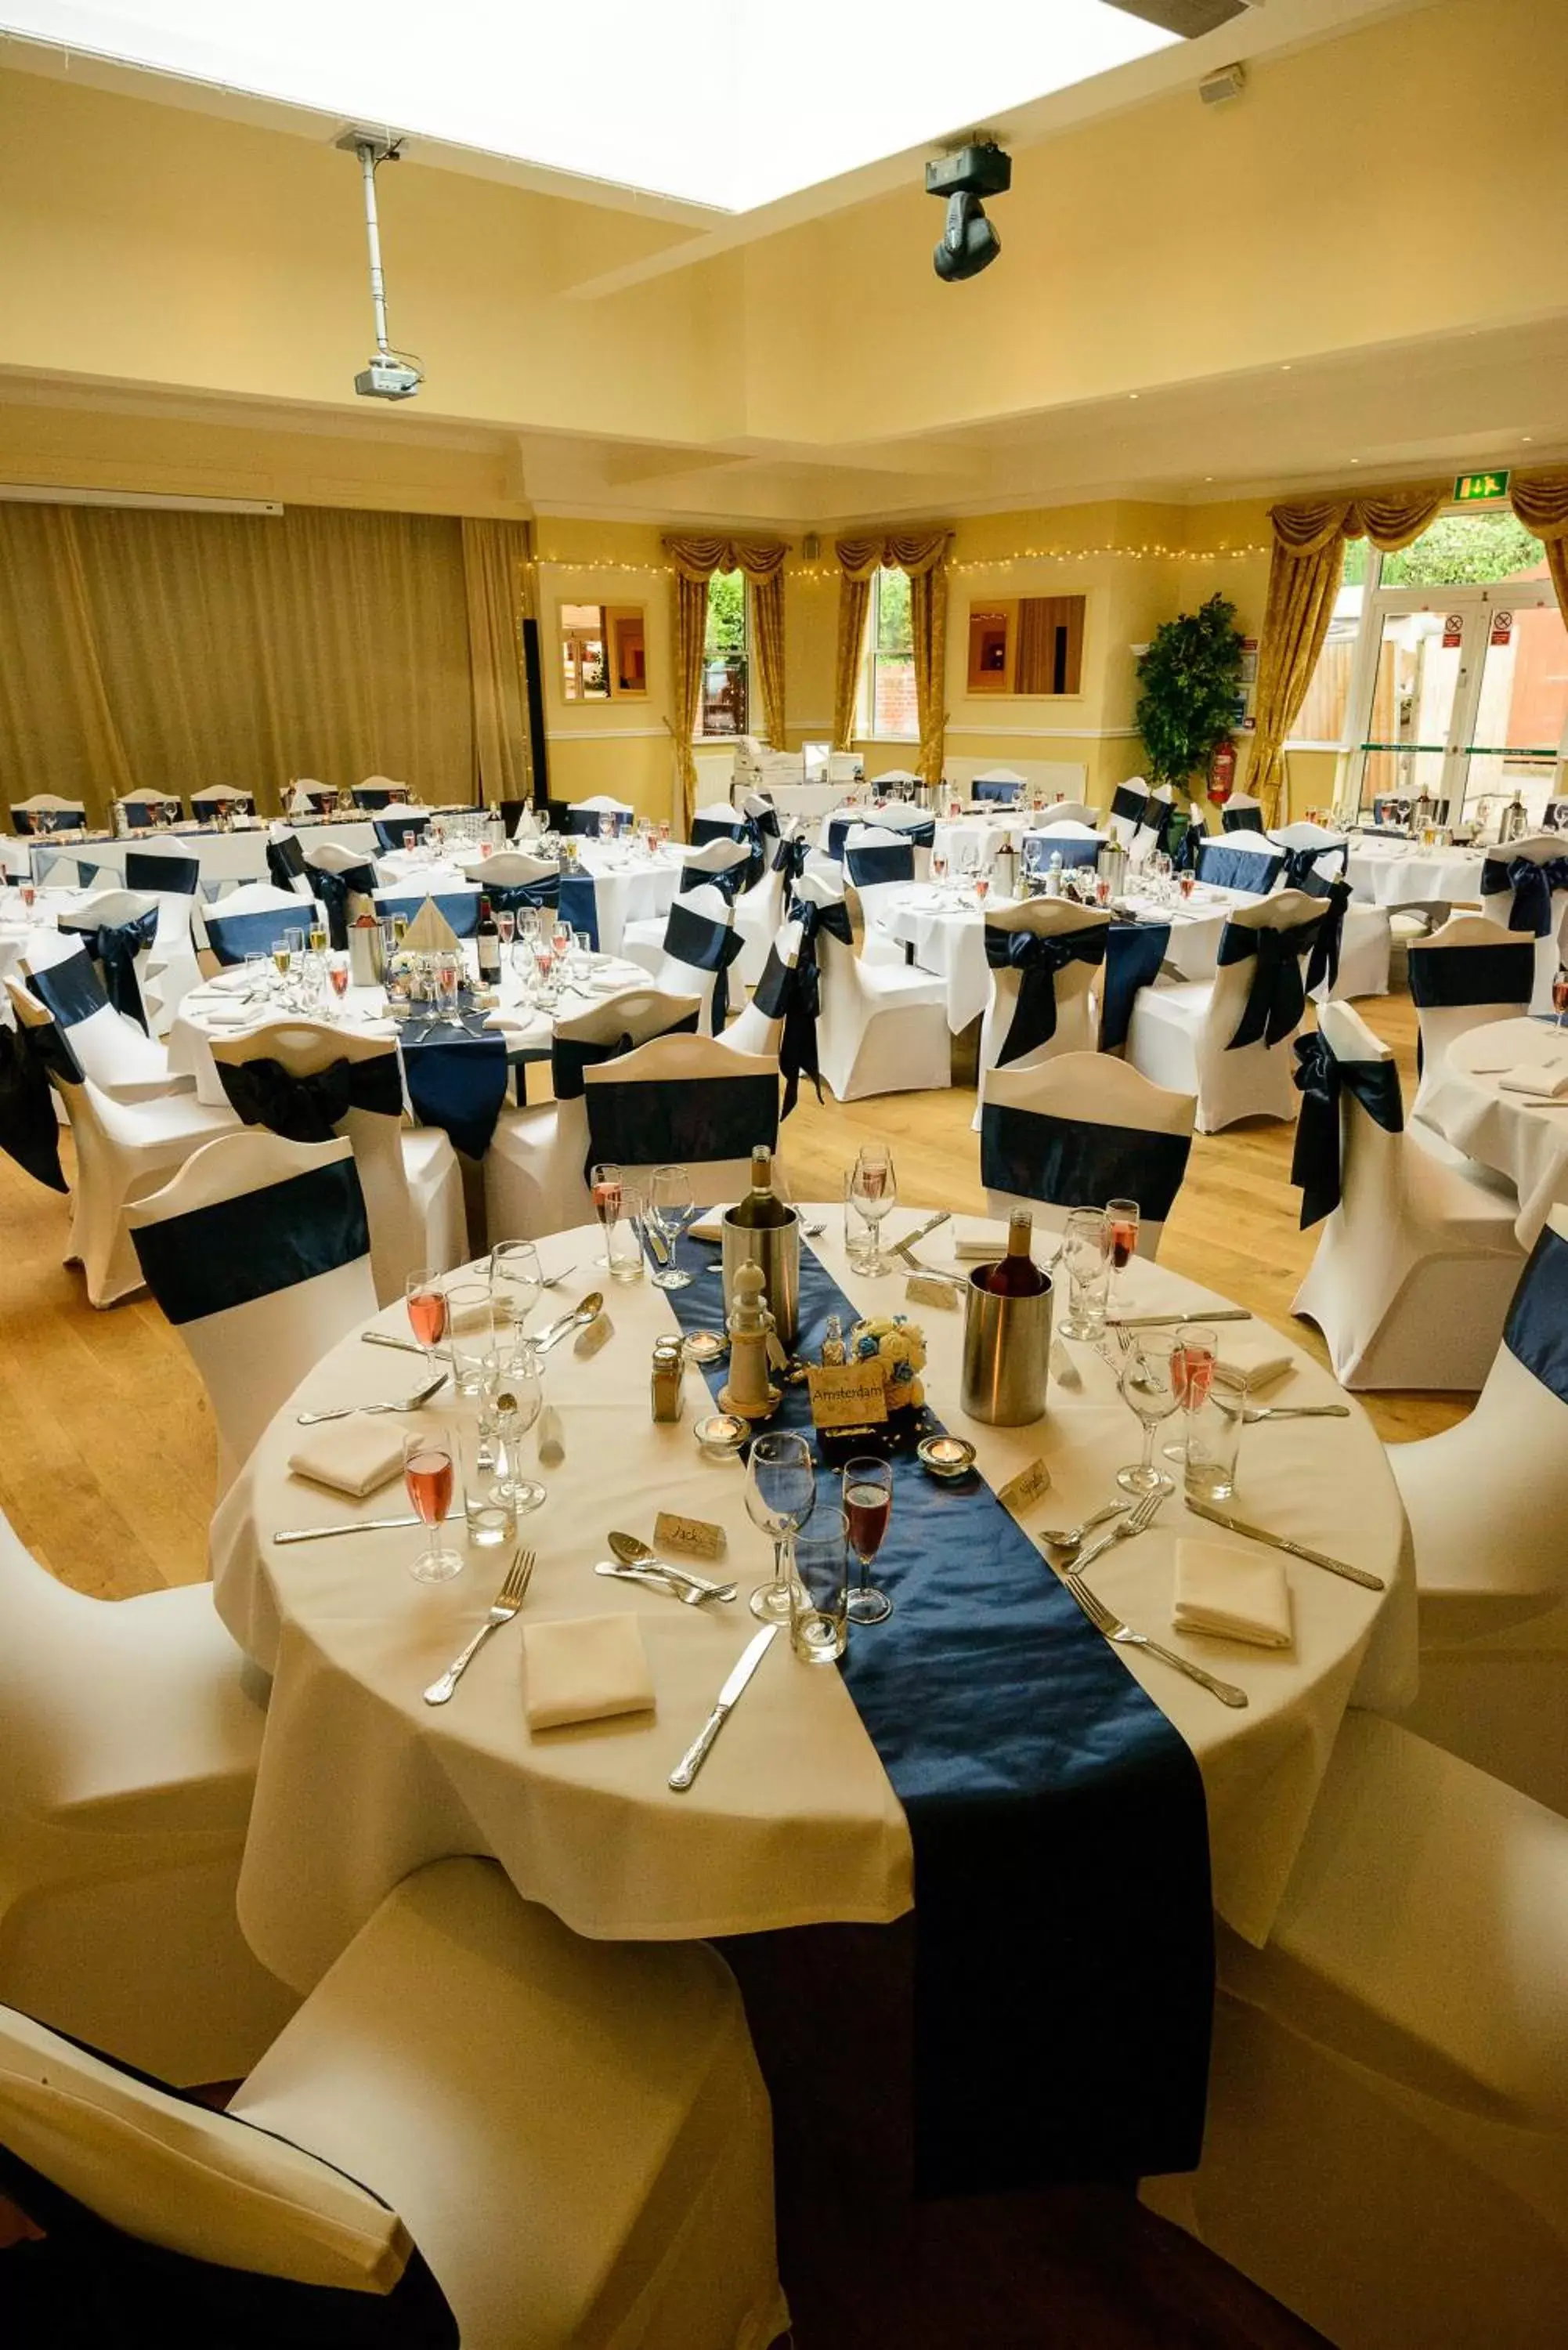 Banquet/Function facilities, Banquet Facilities in Waveney House Hotel